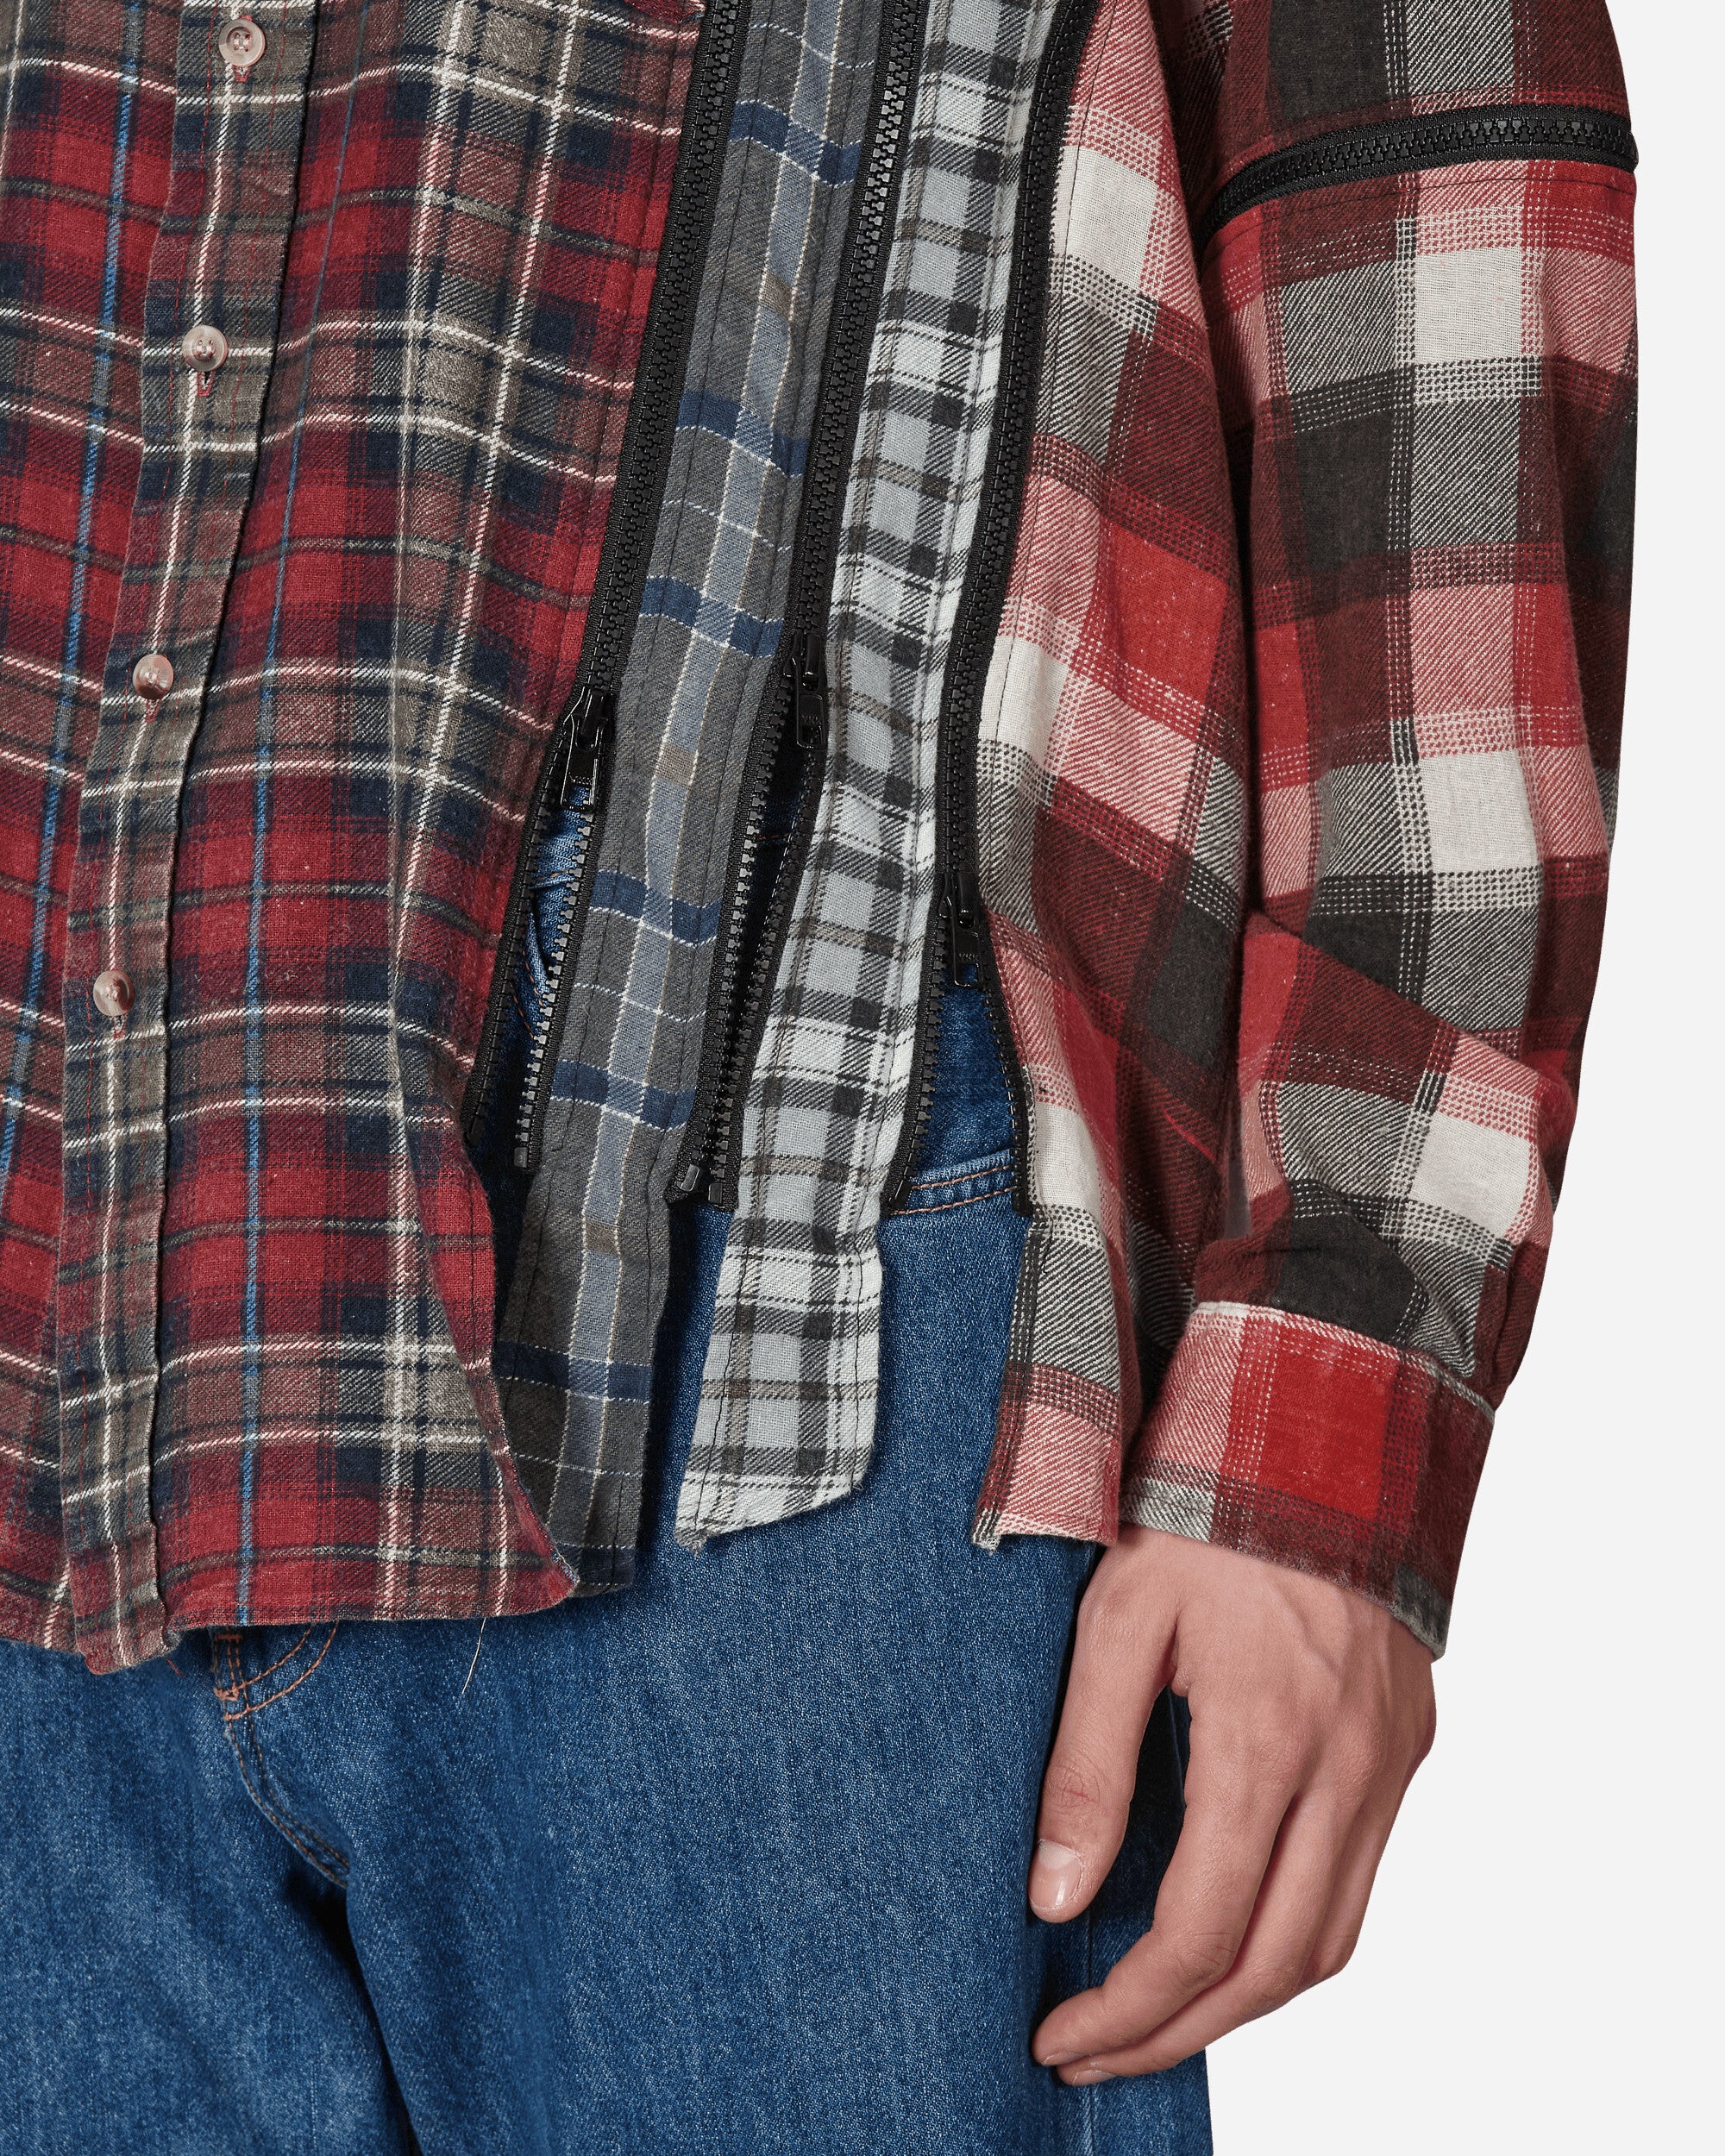 Needles Flannel Shirt - 7 Cuts Zipped Wide Shirt Assorted Shirts Longsleeve Shirt MR343 1006